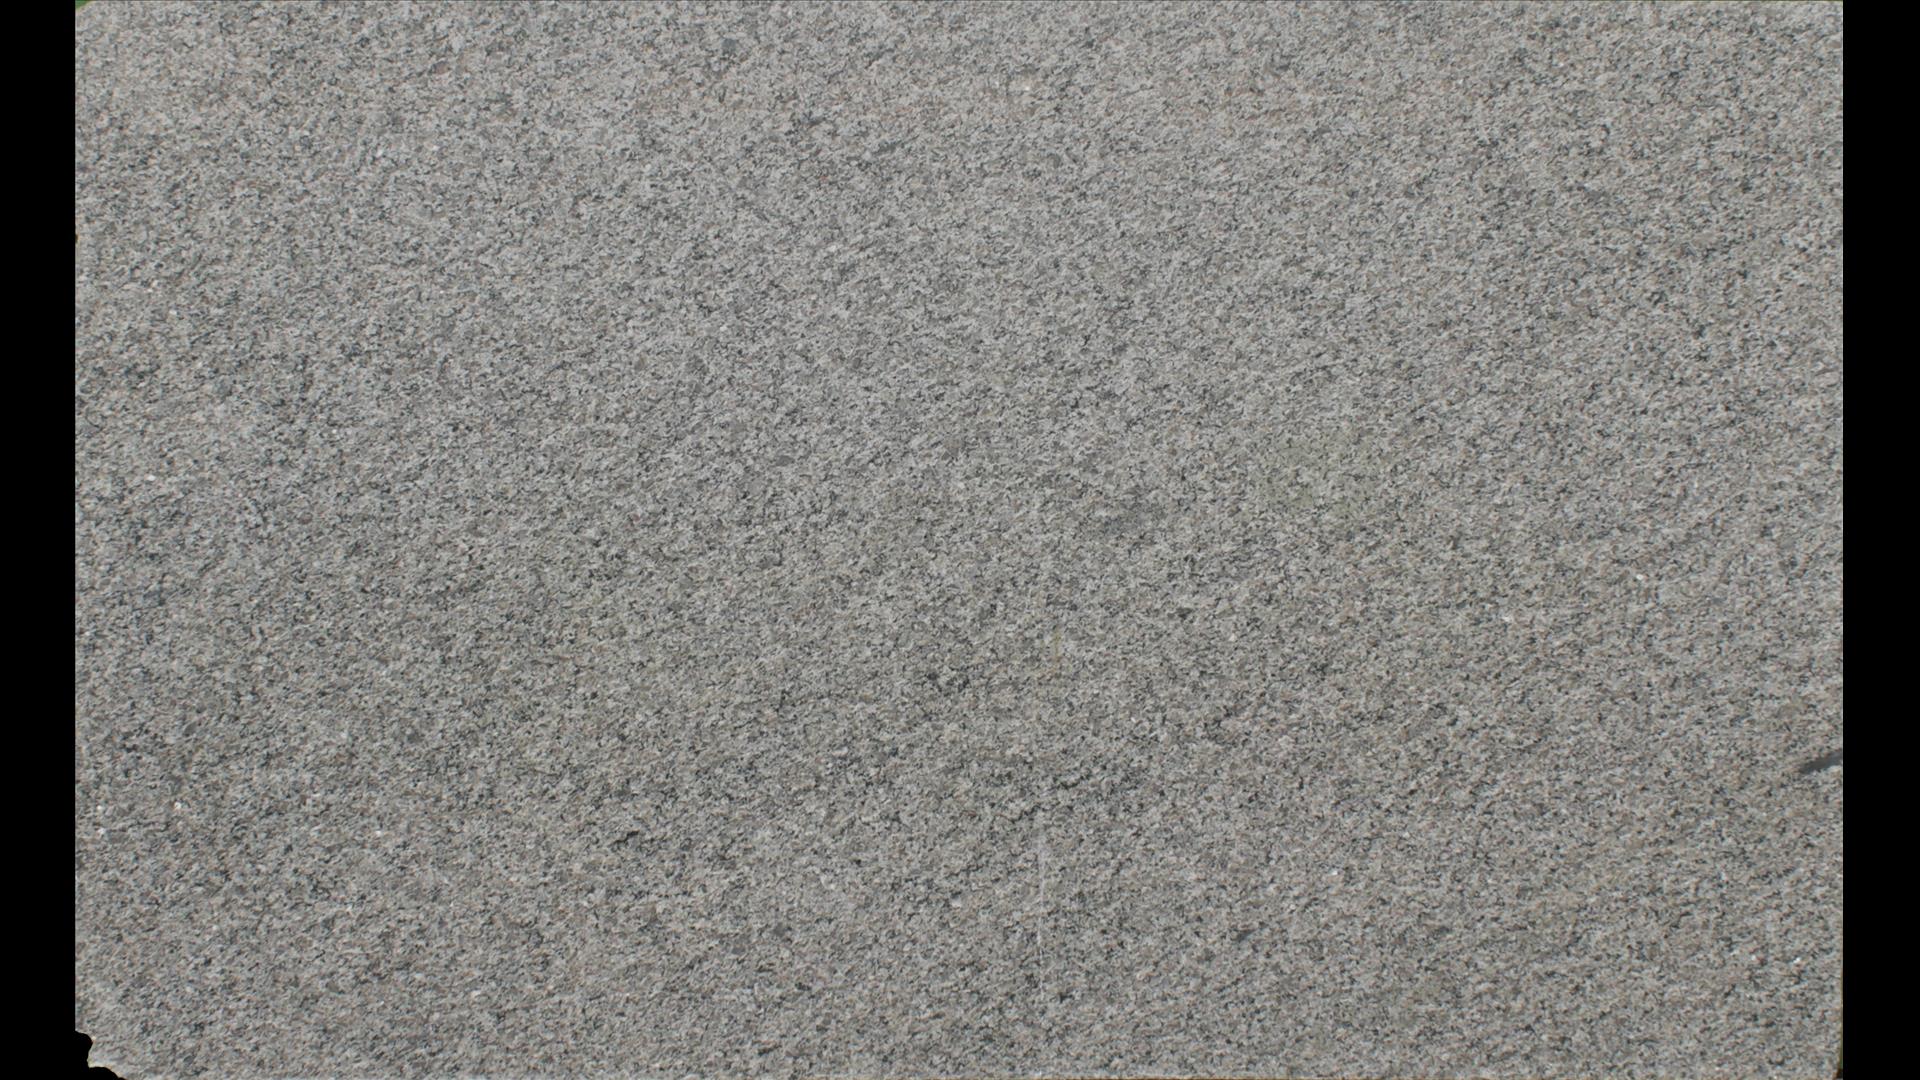 CALEDONIA Granite Slabs